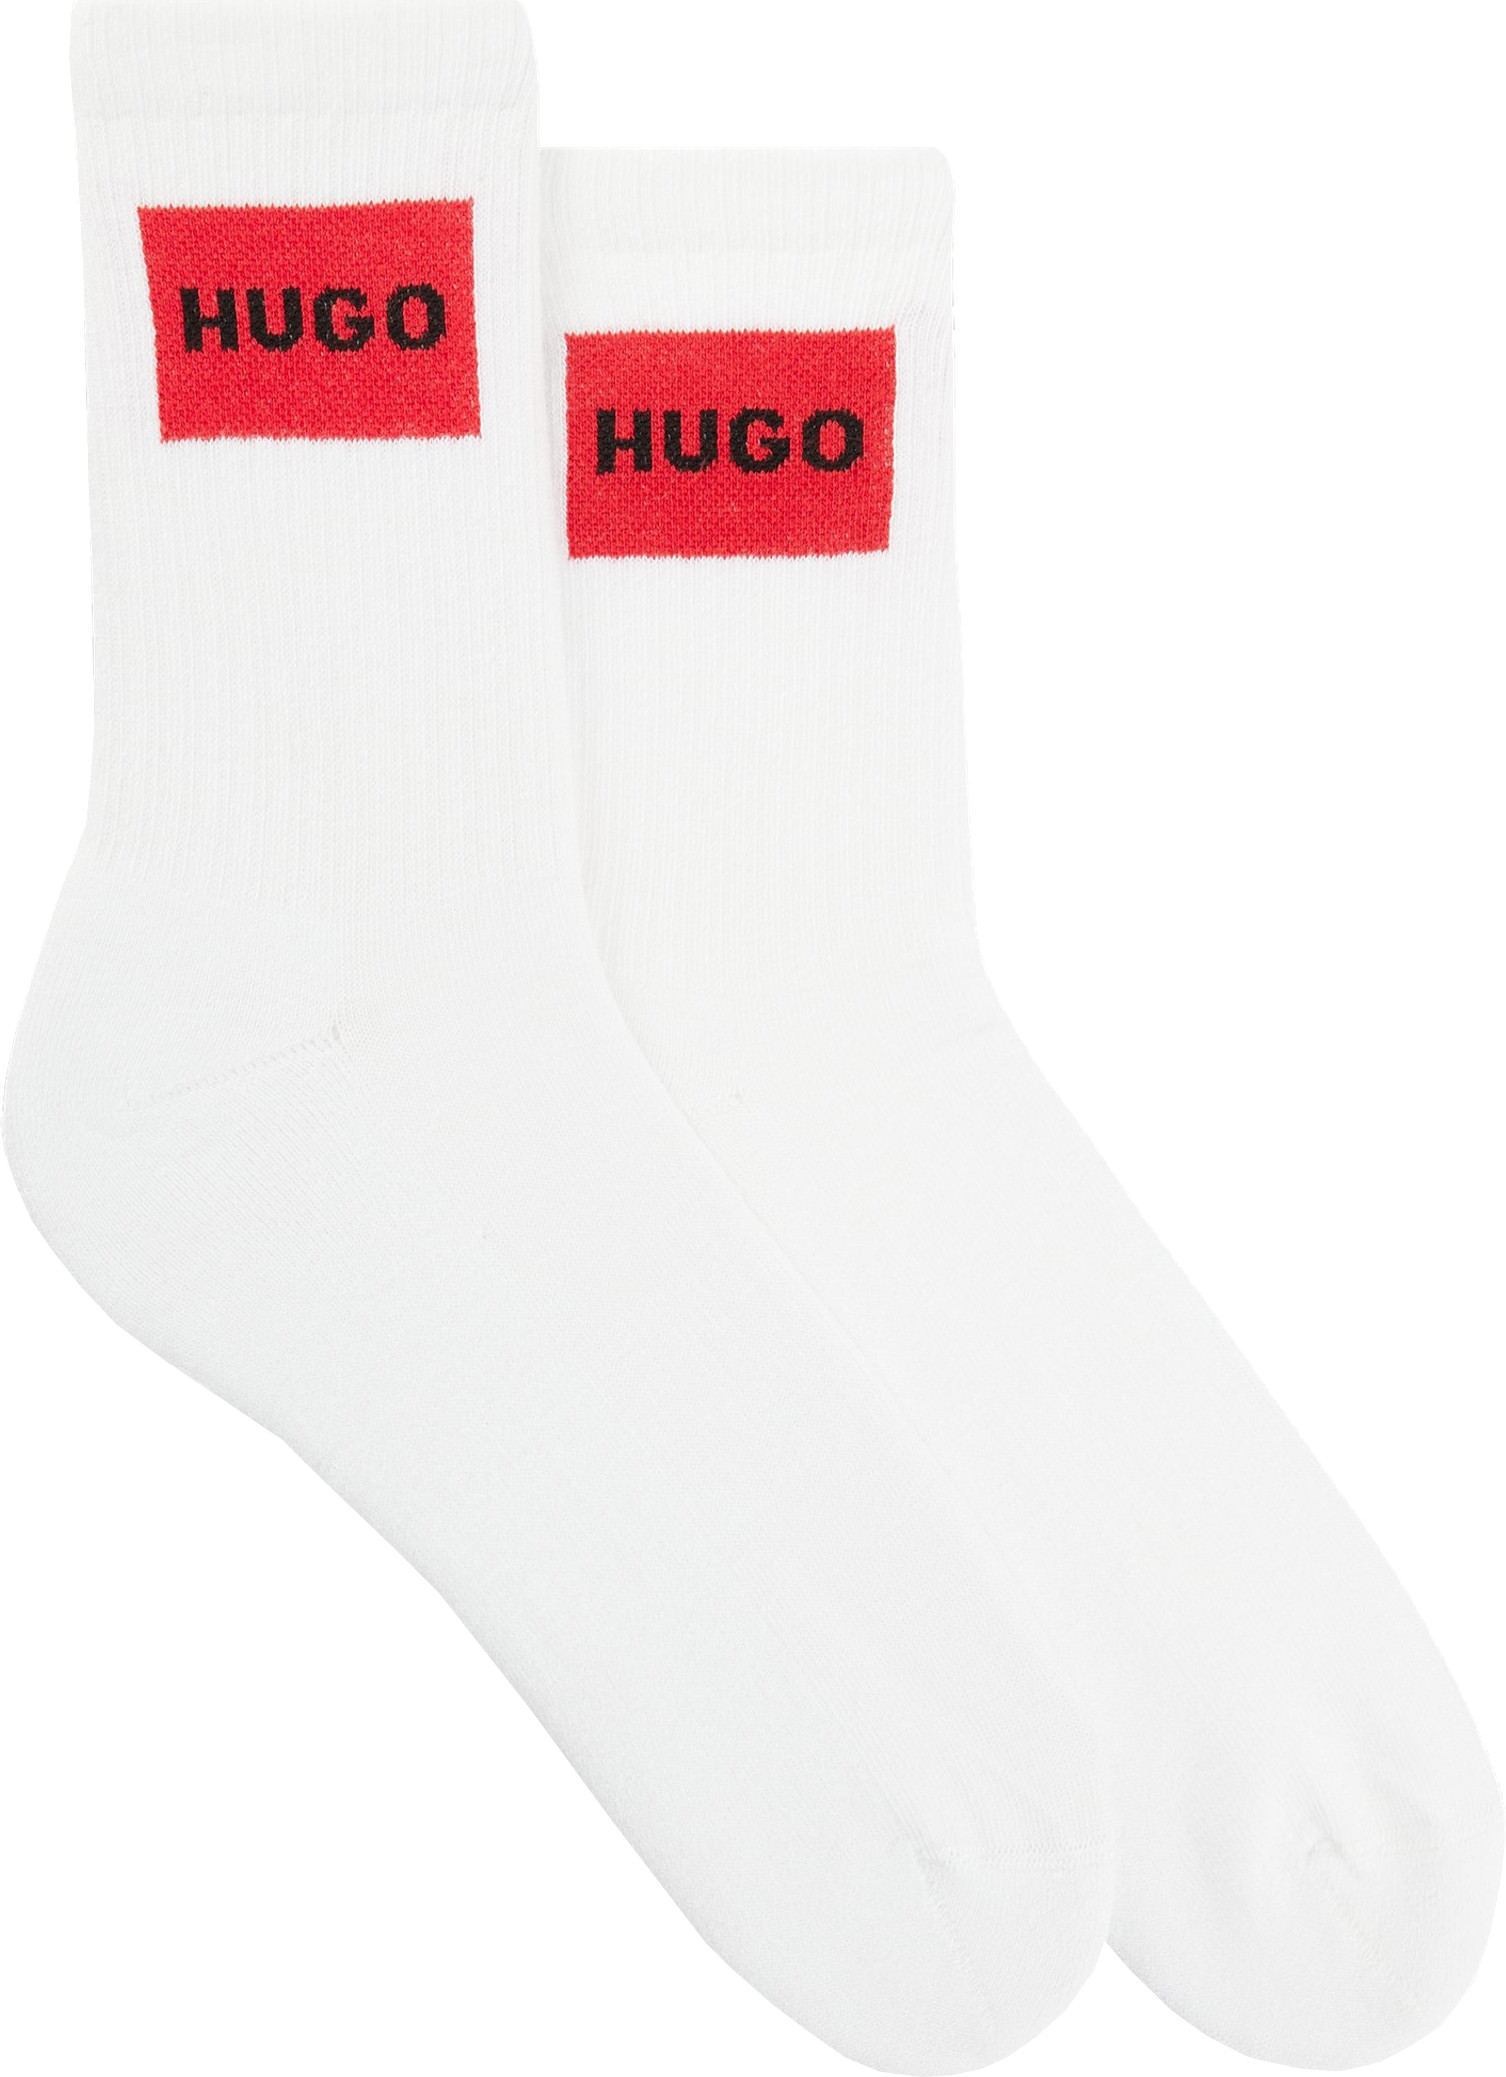 Hugo Boss 2 PACK - dámske ponožky HUGO 50510661-100 39-42